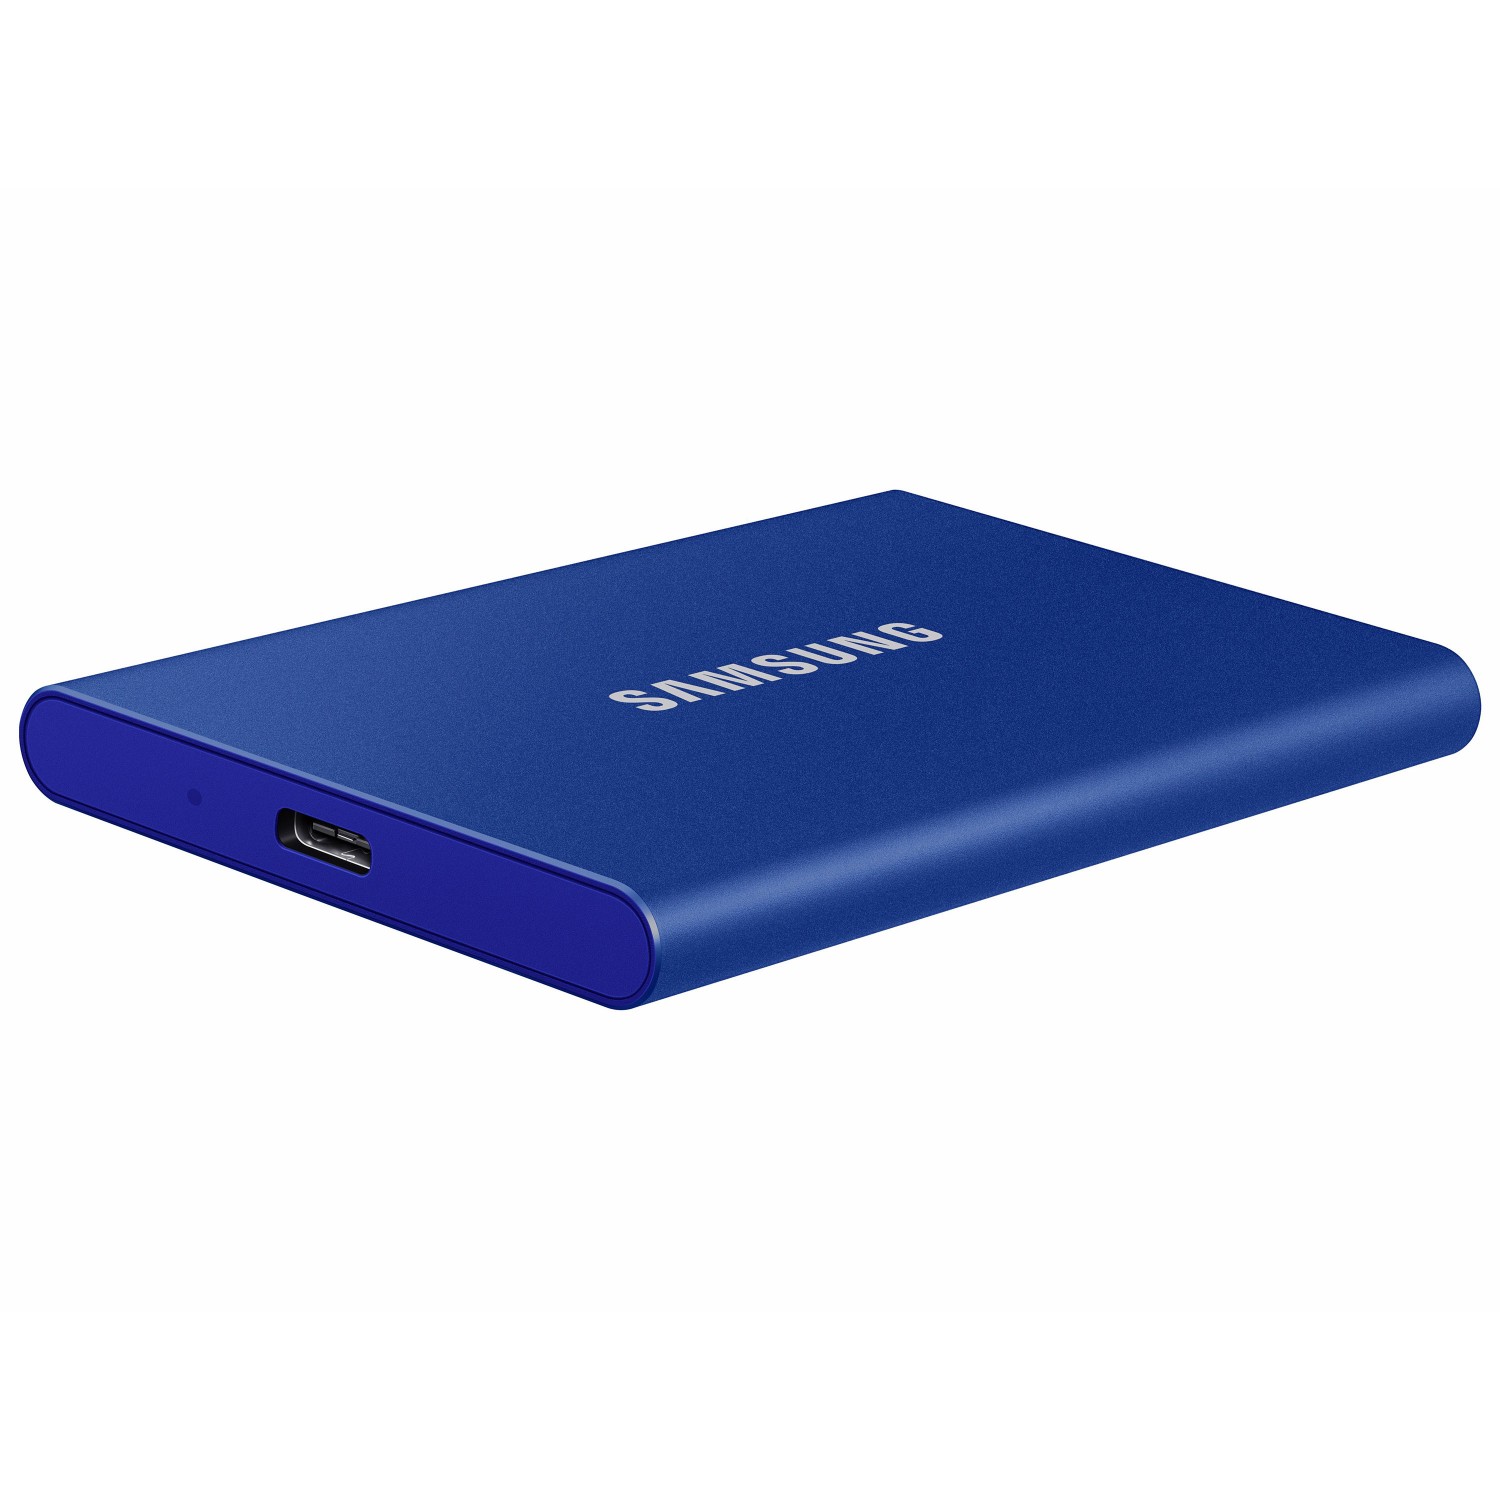 حافظه اس اس دی اکسترنال SAMSUNG T7 2TB - Indigo Blue-3